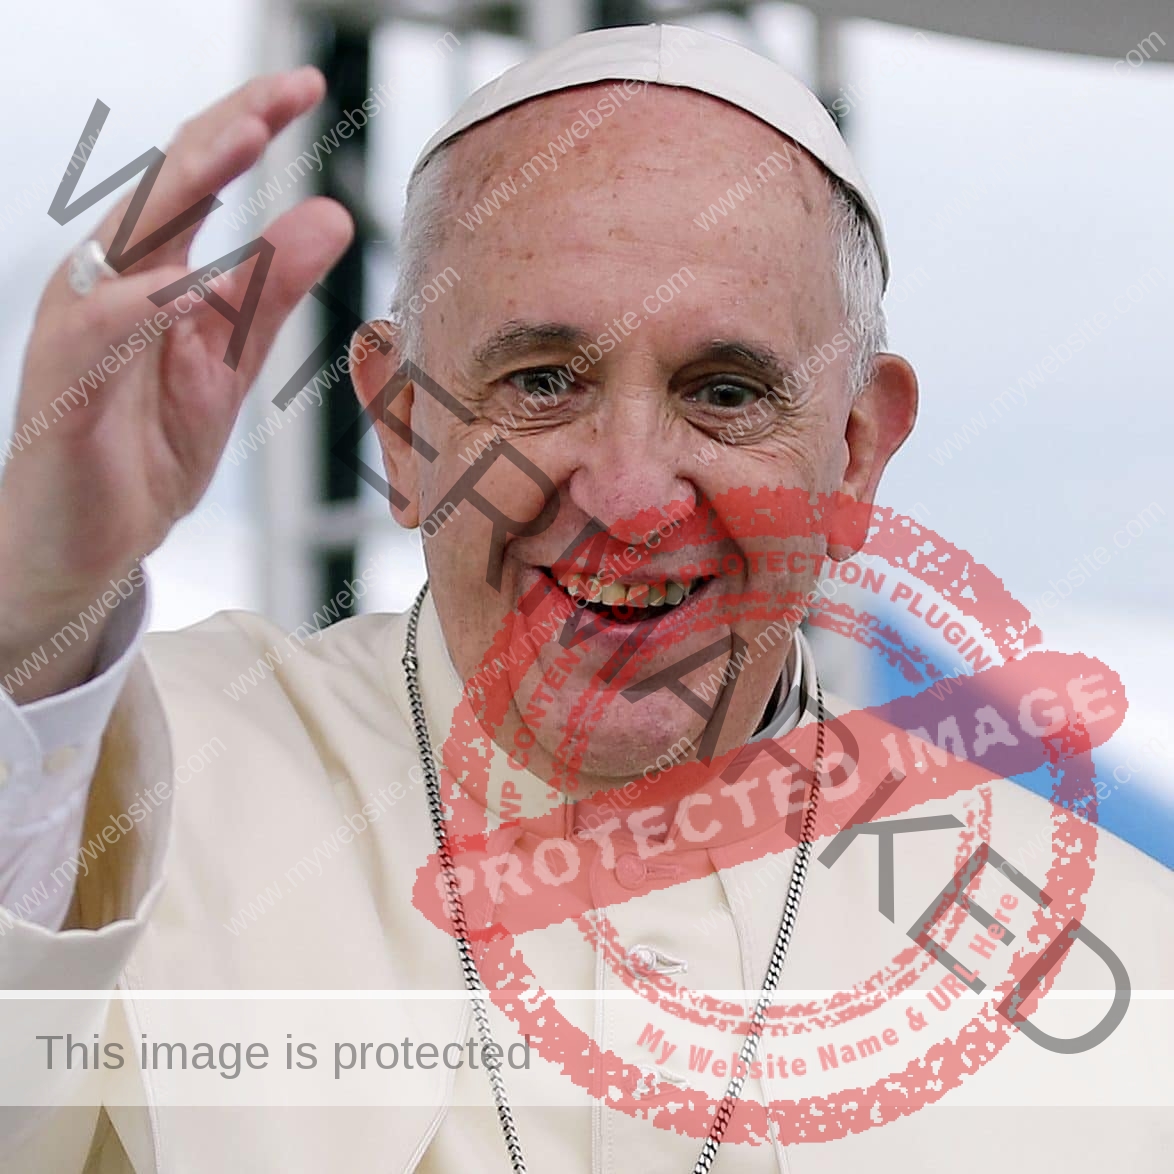 البابا فرنسيس يتوجه إلى أسيزي 3 أكتوبر لتوقيع الرسالة العامة 